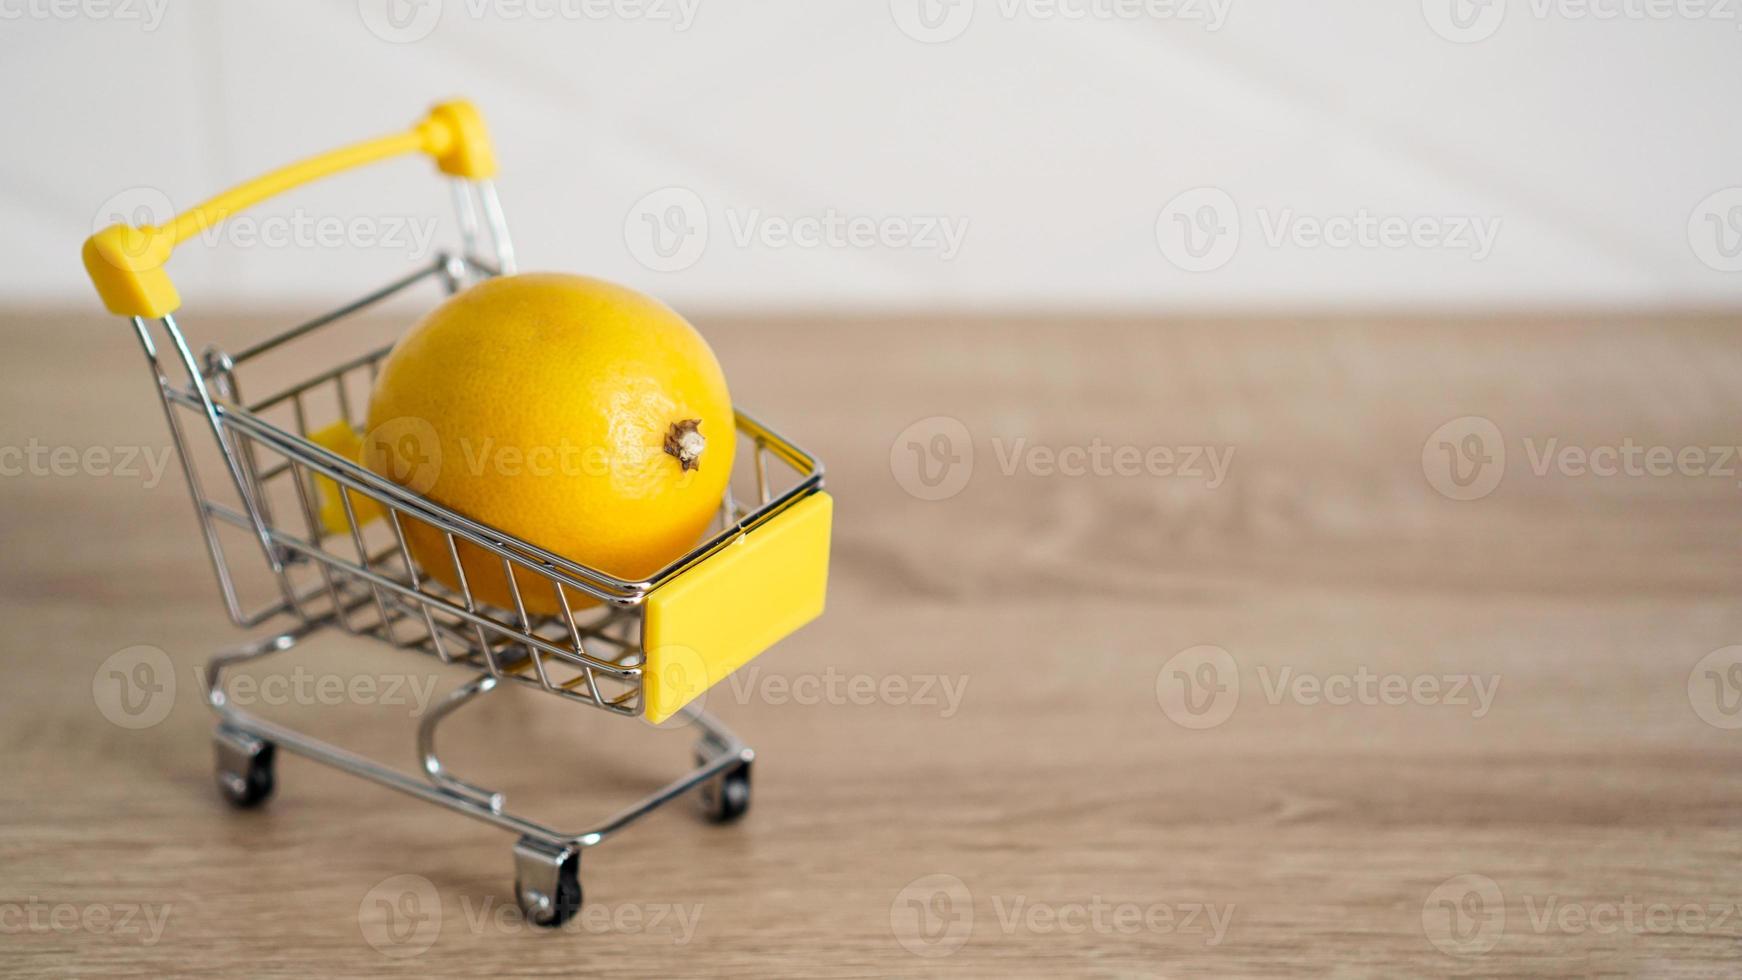 limão em um carrinho de supermercado na cozinha foto